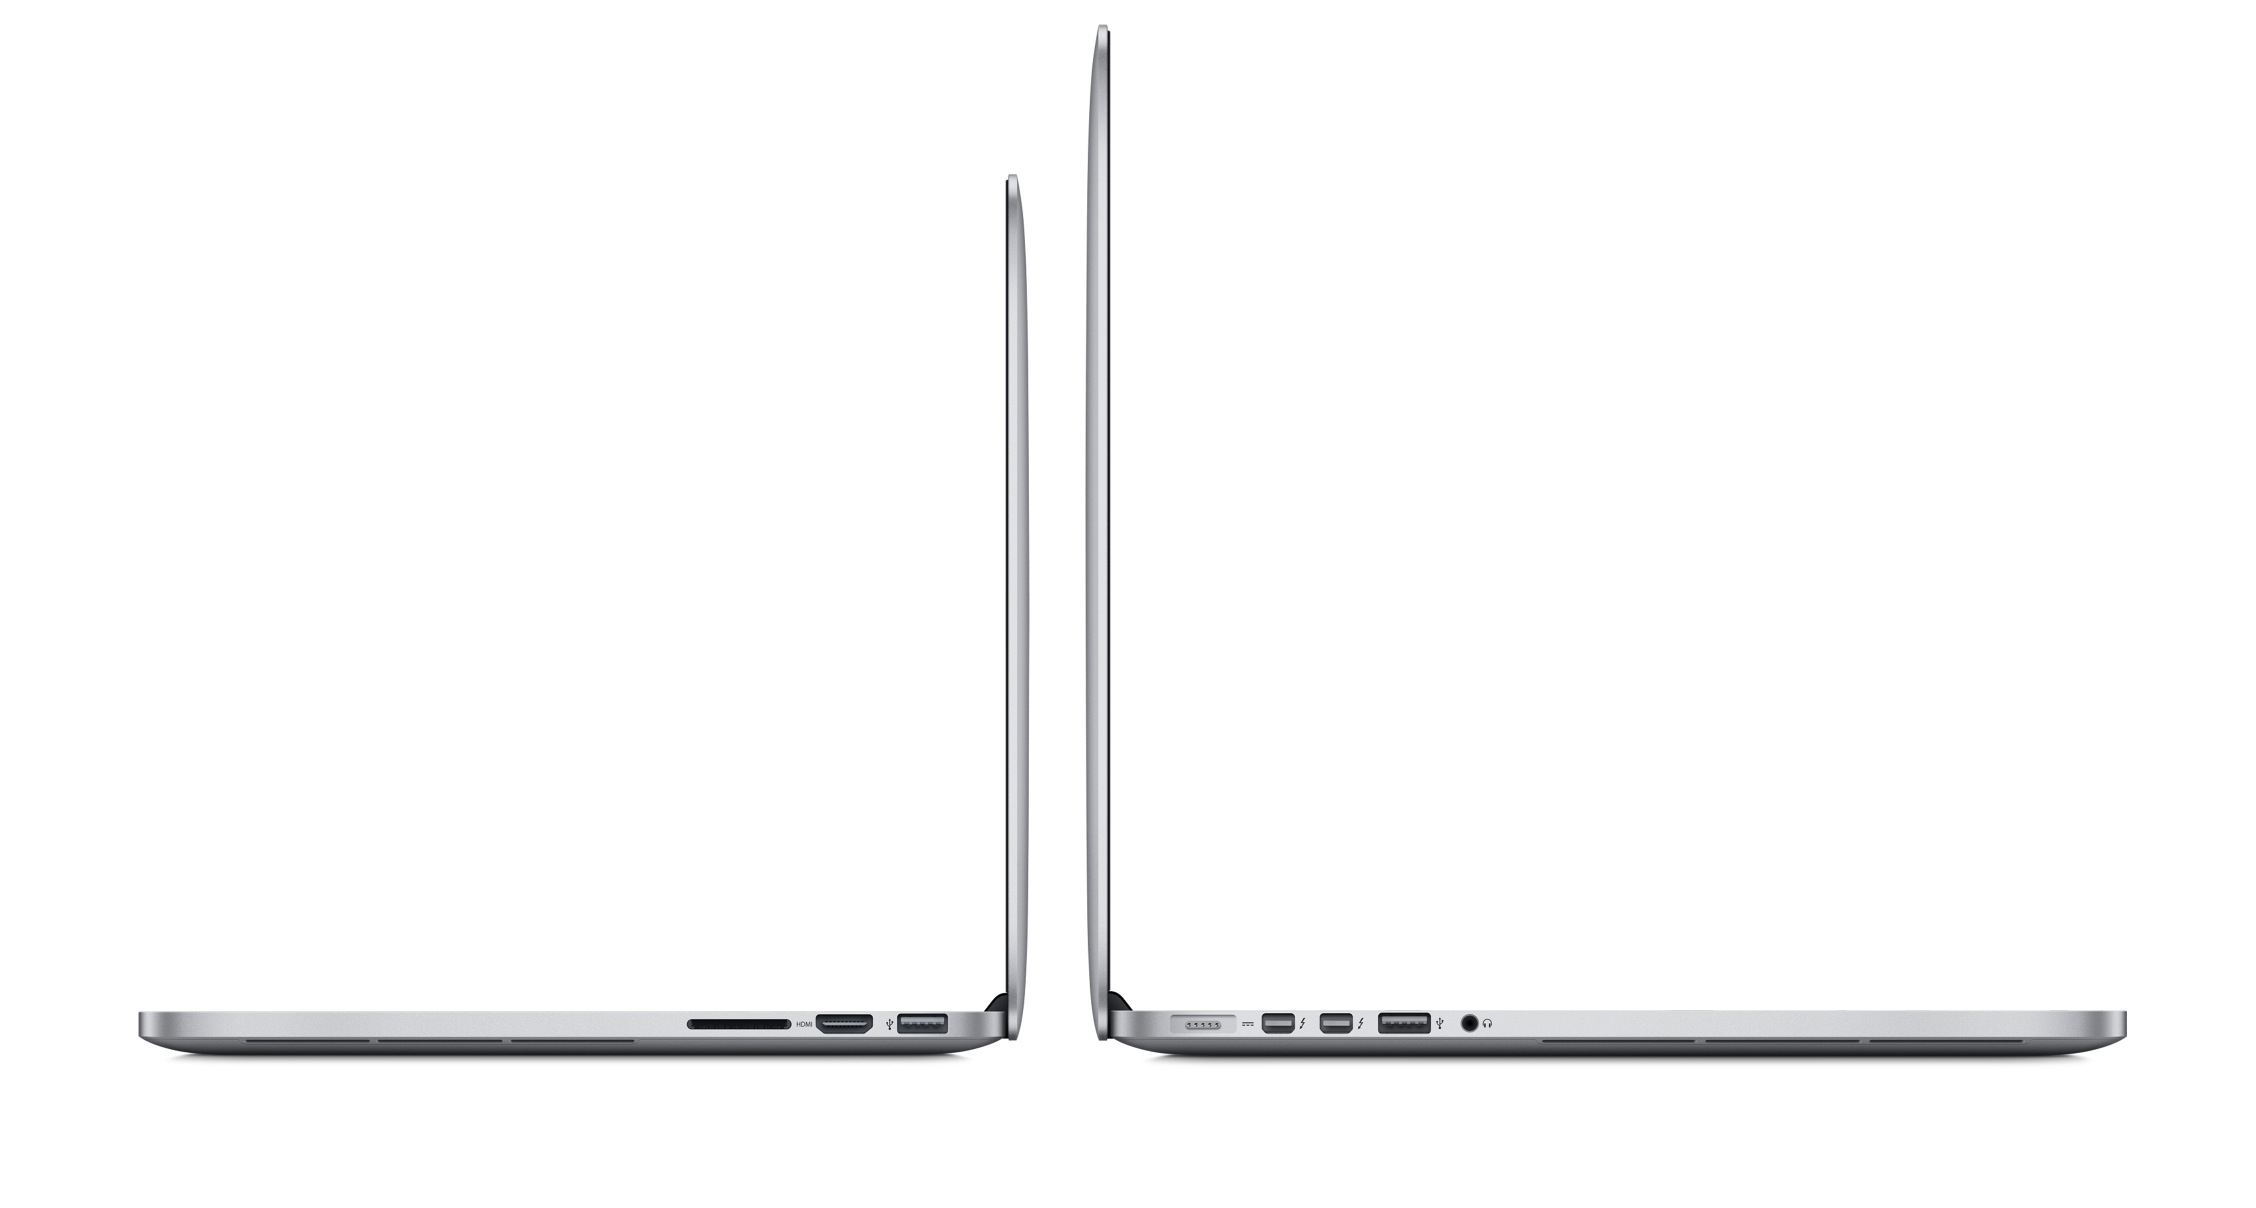 13-inch-MacBook-Pro-Retina-vs.-15-inch-MacBook-Pro-Retina-Late-2013-Portability